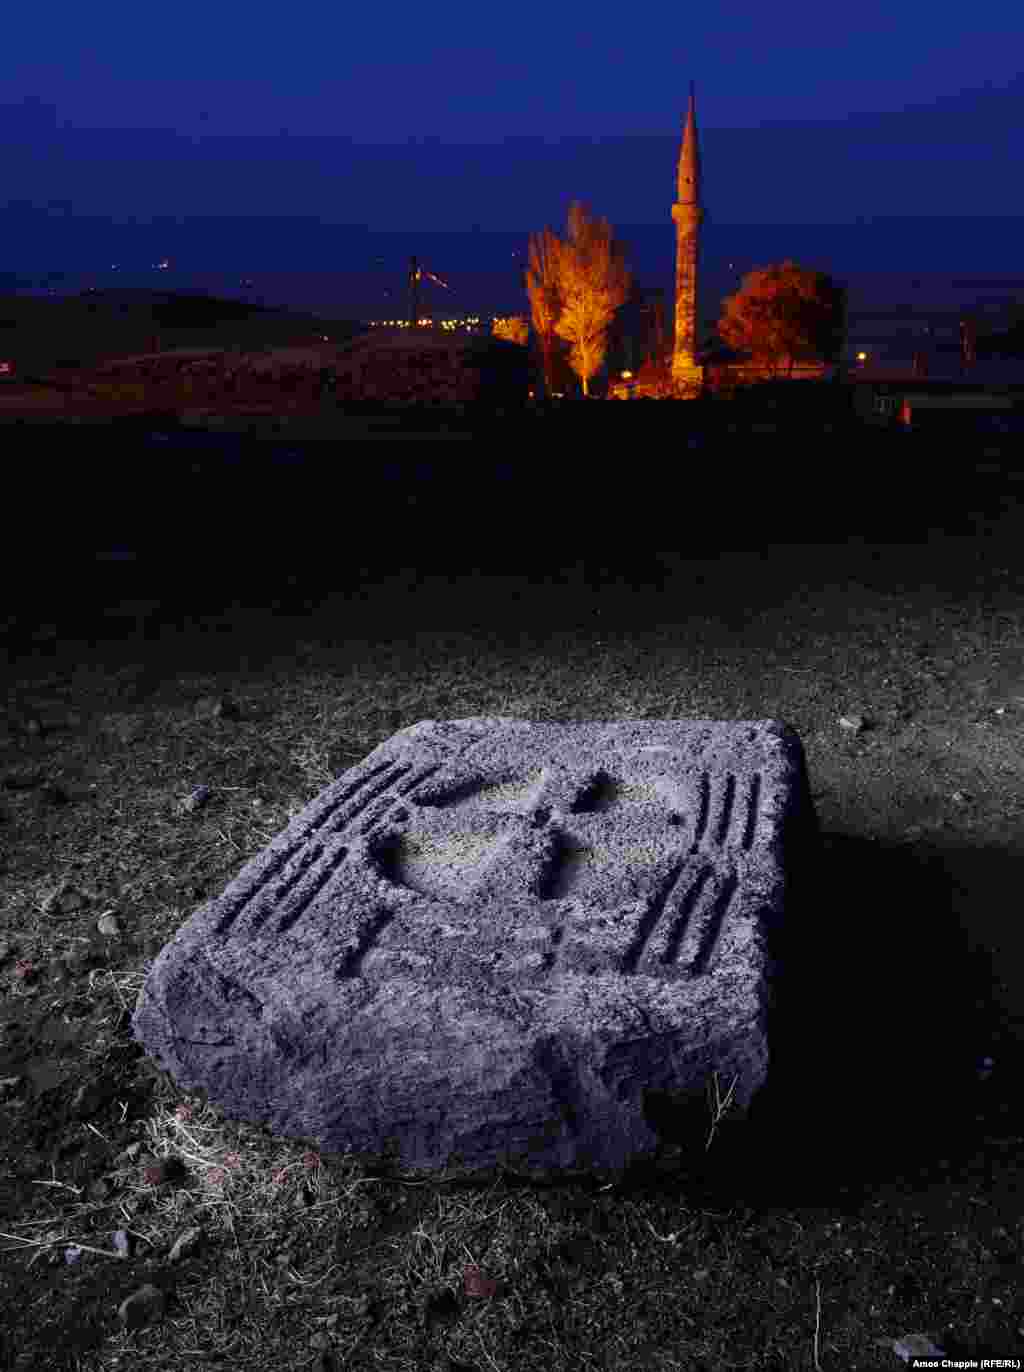 Хачкар на месте ныне разрушенного монастыря в Козлуце. Хачкары - традиционные армянские произведения искусства, вырезанные из камня, которыми отмечают святые места.